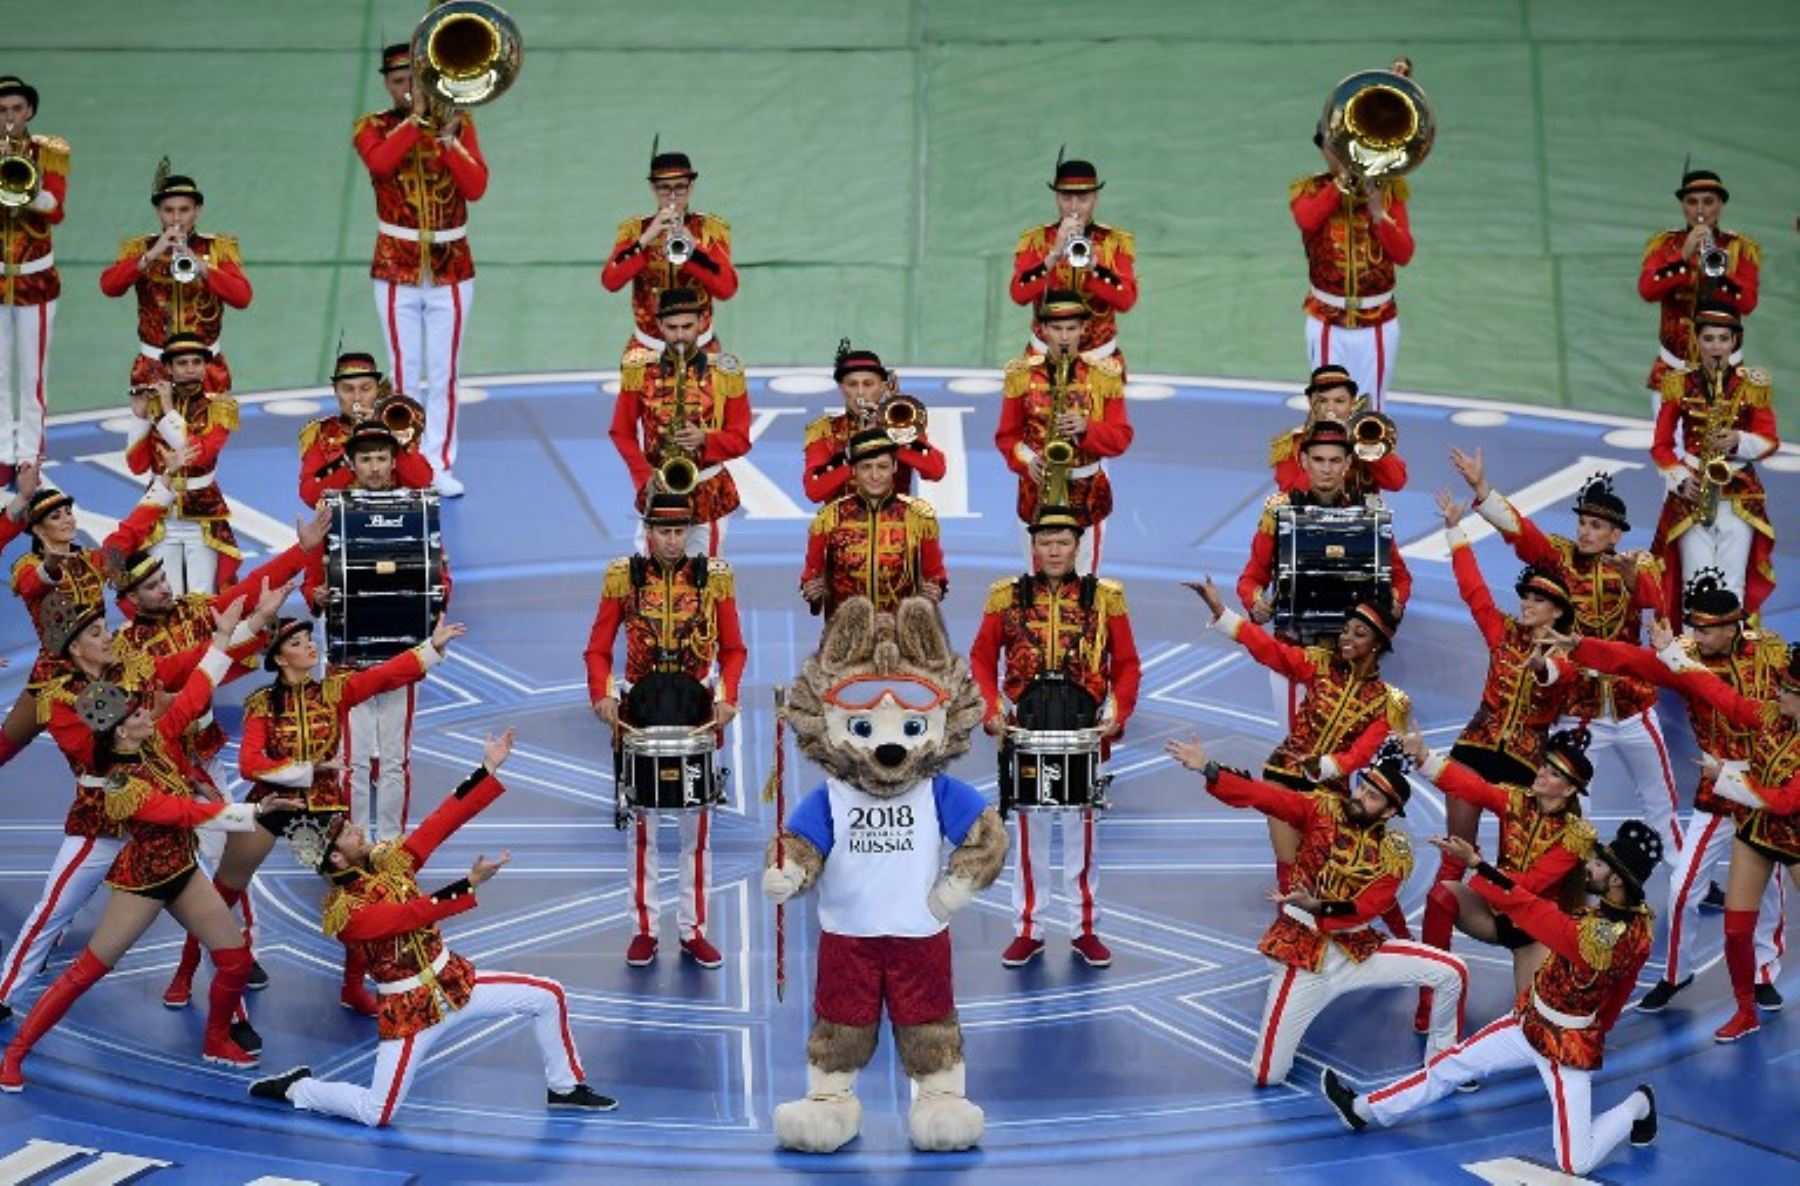 Todos el planeta estará expectante para ver el inicio del Mundial de Rusia 2018. La mascota Zabivaka será la anfitriona de la ceremonia inaugural